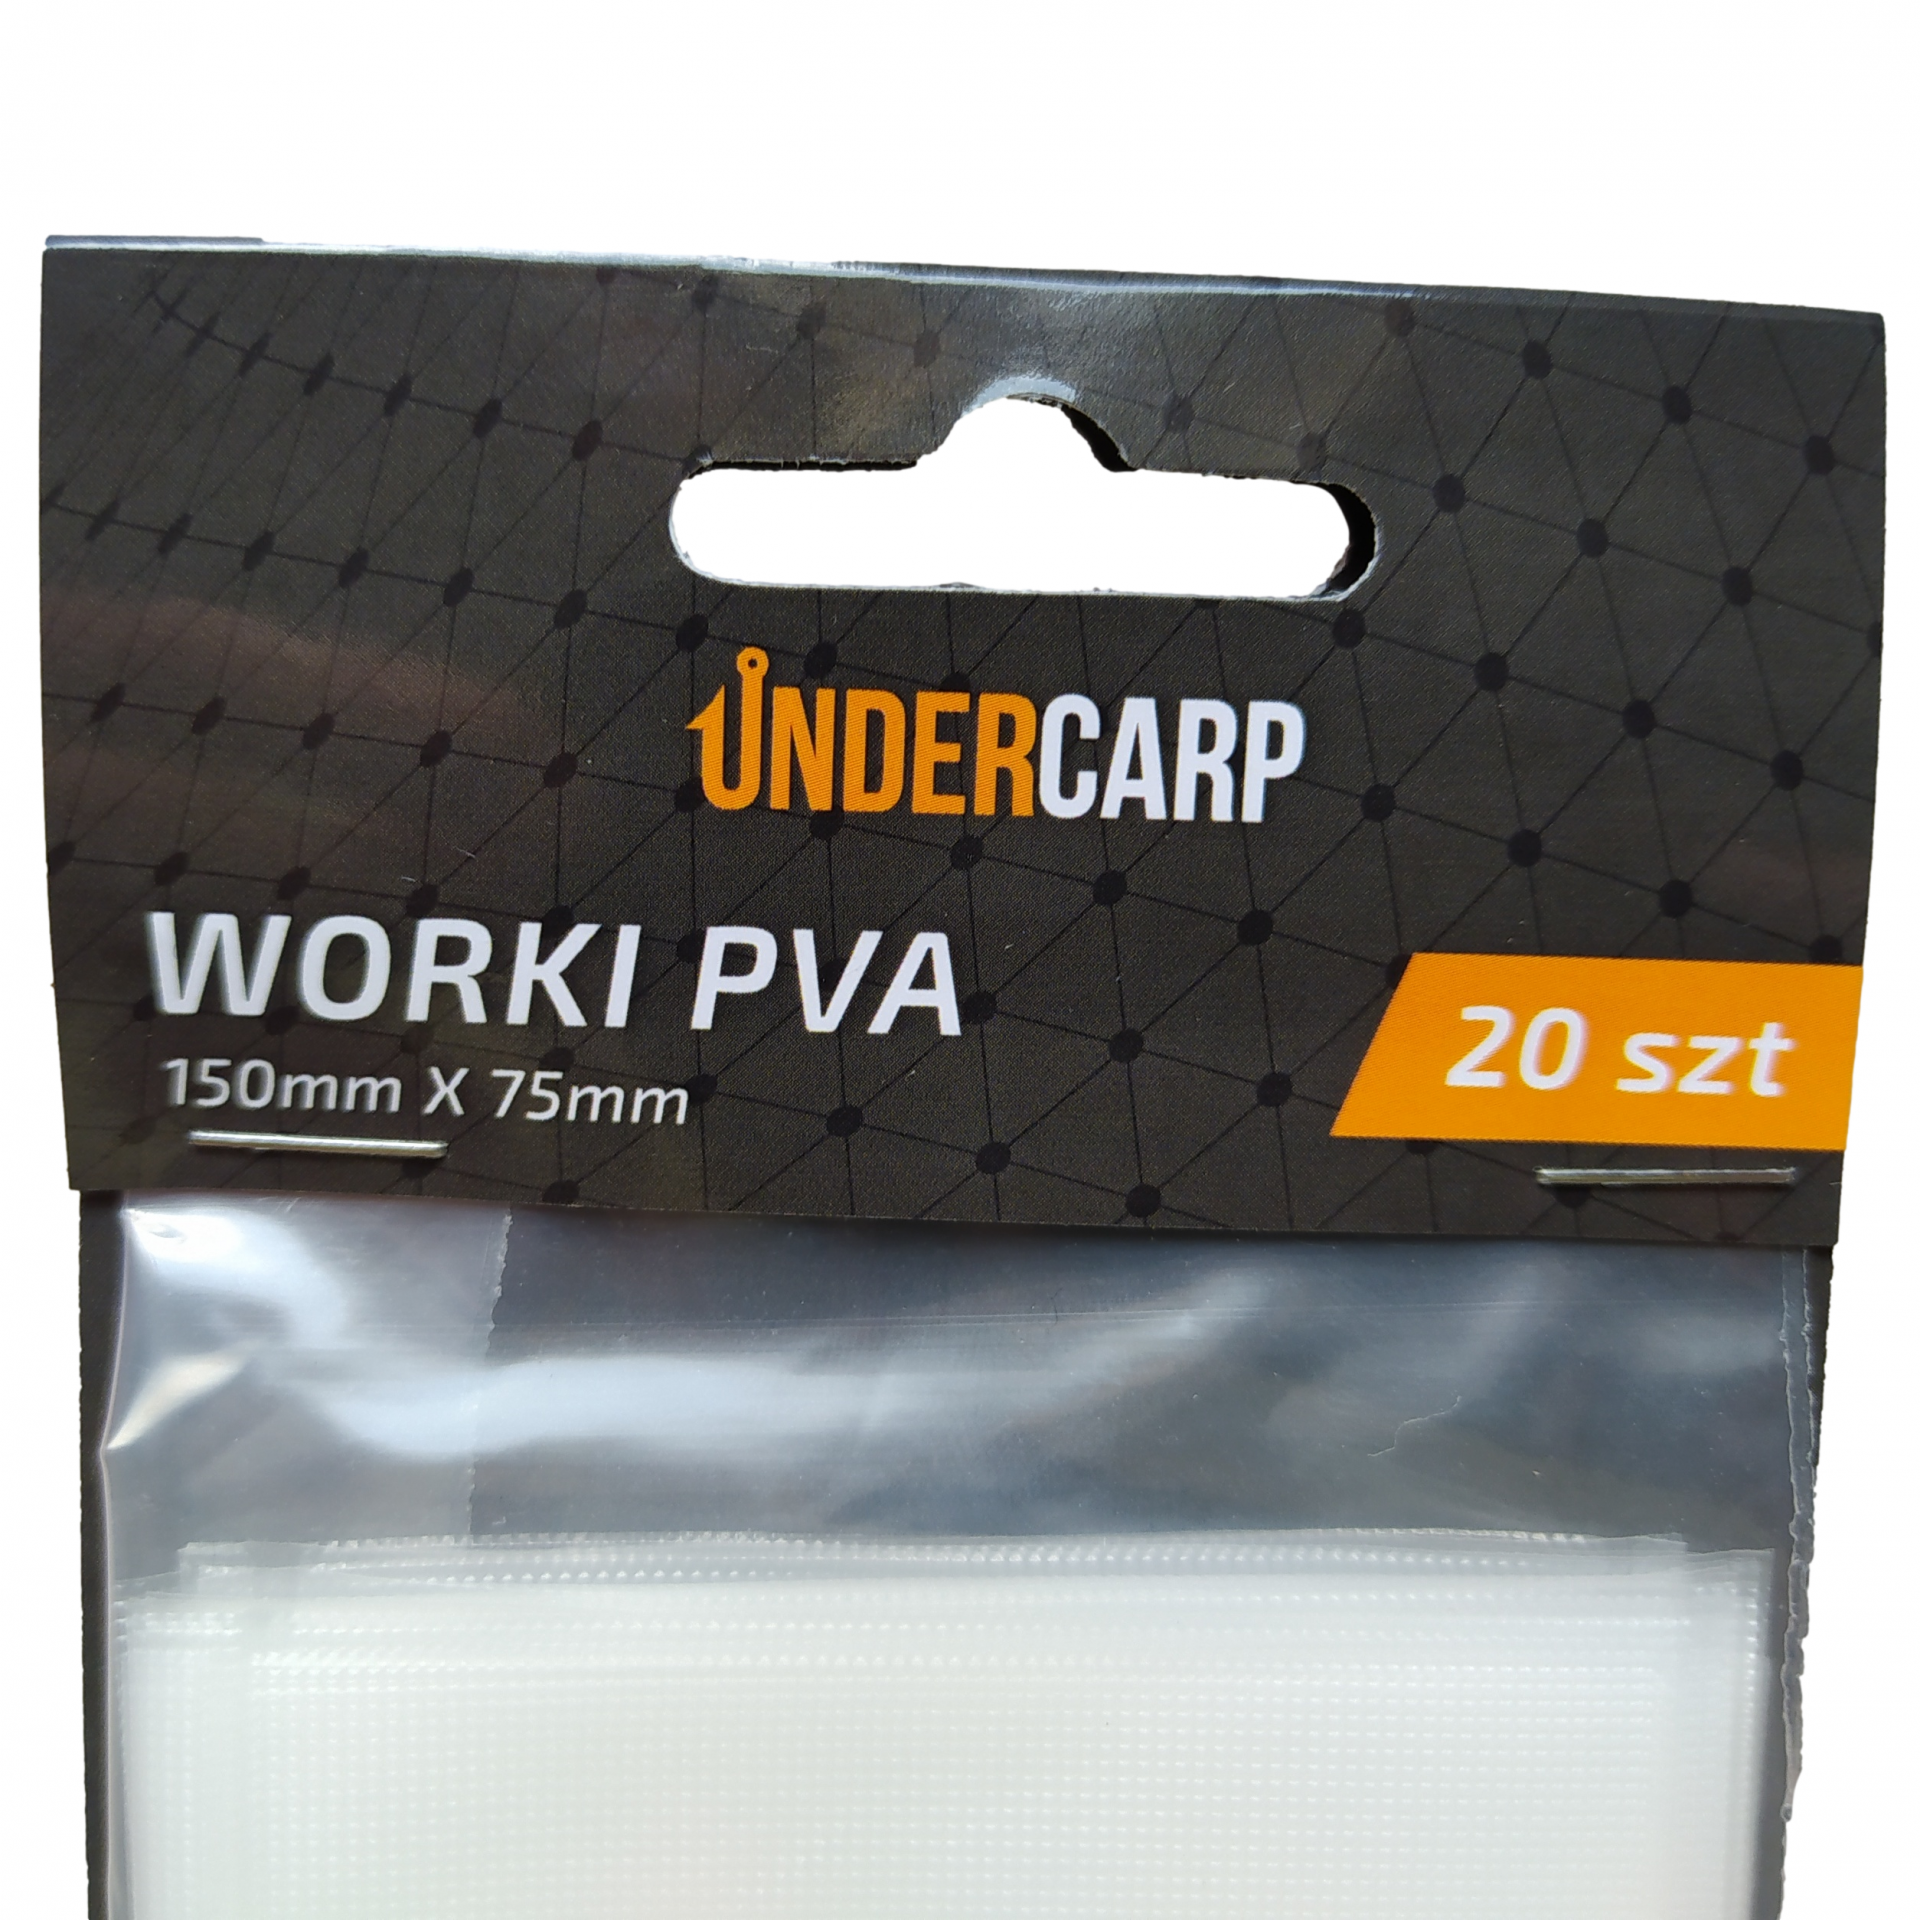 UnderCarp - Worki PVA 150mm x 75mm 20 szt.